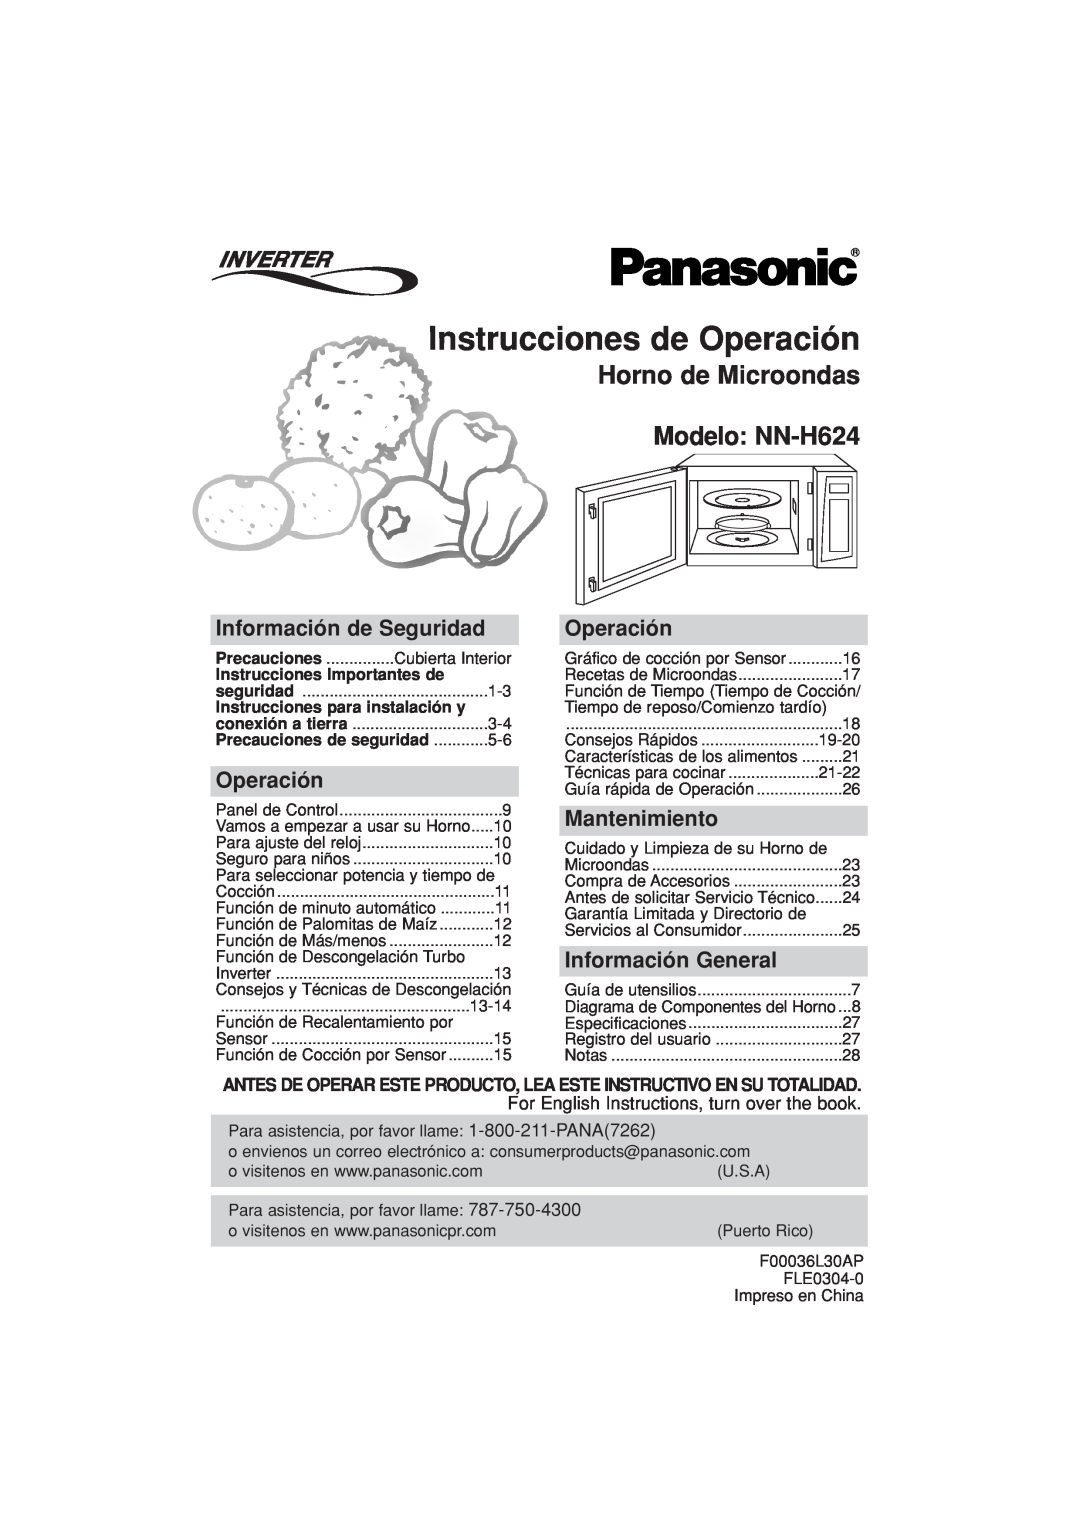 Panasonic Instrucciones de Operación, Horno de Microondas Modelo NN-H624, Información de Seguridad, Mantenimiento 